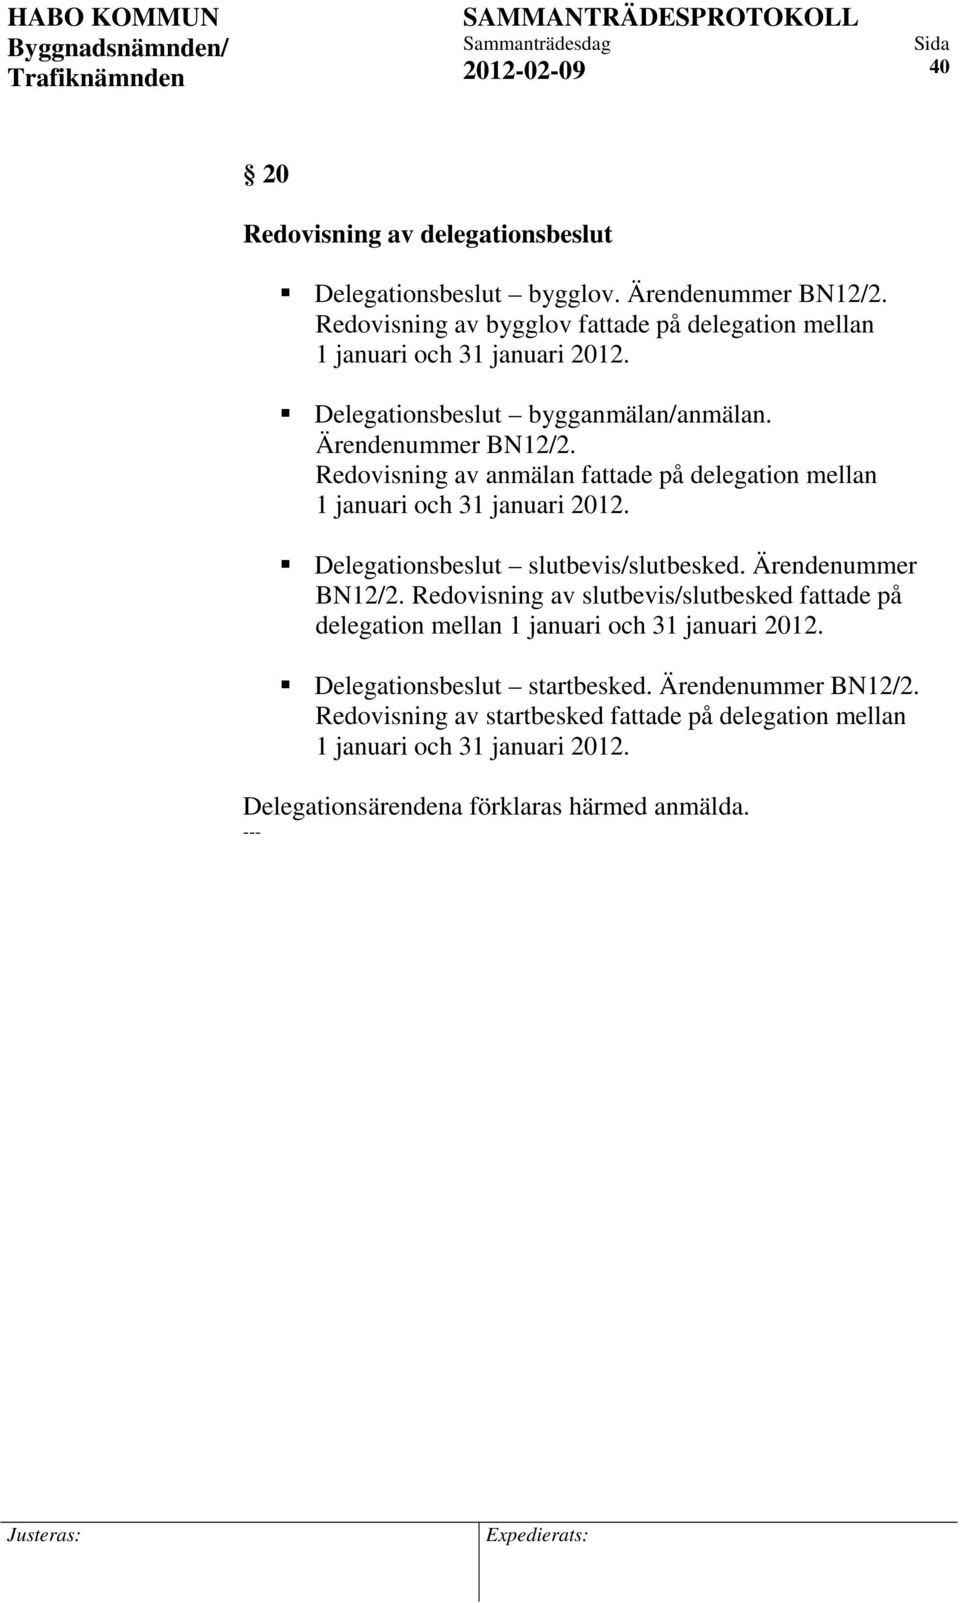 Redovisning av anmälan fattade på delegation mellan 1 januari och 31 januari 2012. Delegationsbeslut slutbevis/slutbesked. Ärendenummer BN12/2.